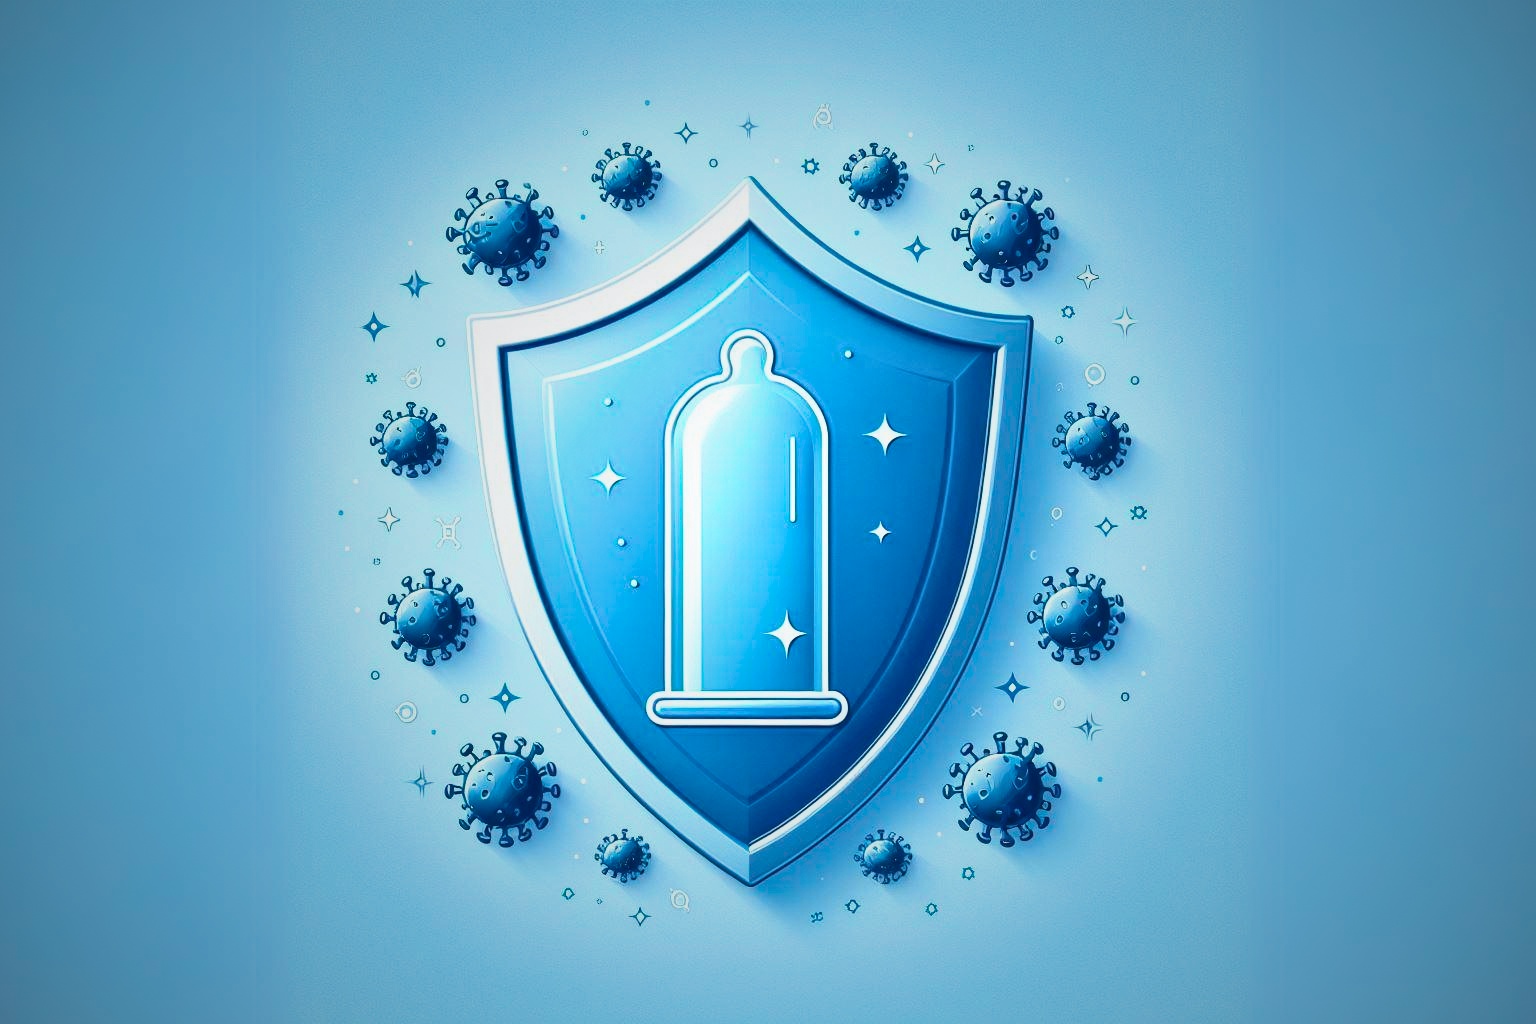 Escudo protector con un preservativo, símbolo de la protección que ofrece el preservativo contra enfermedades y embarazos.